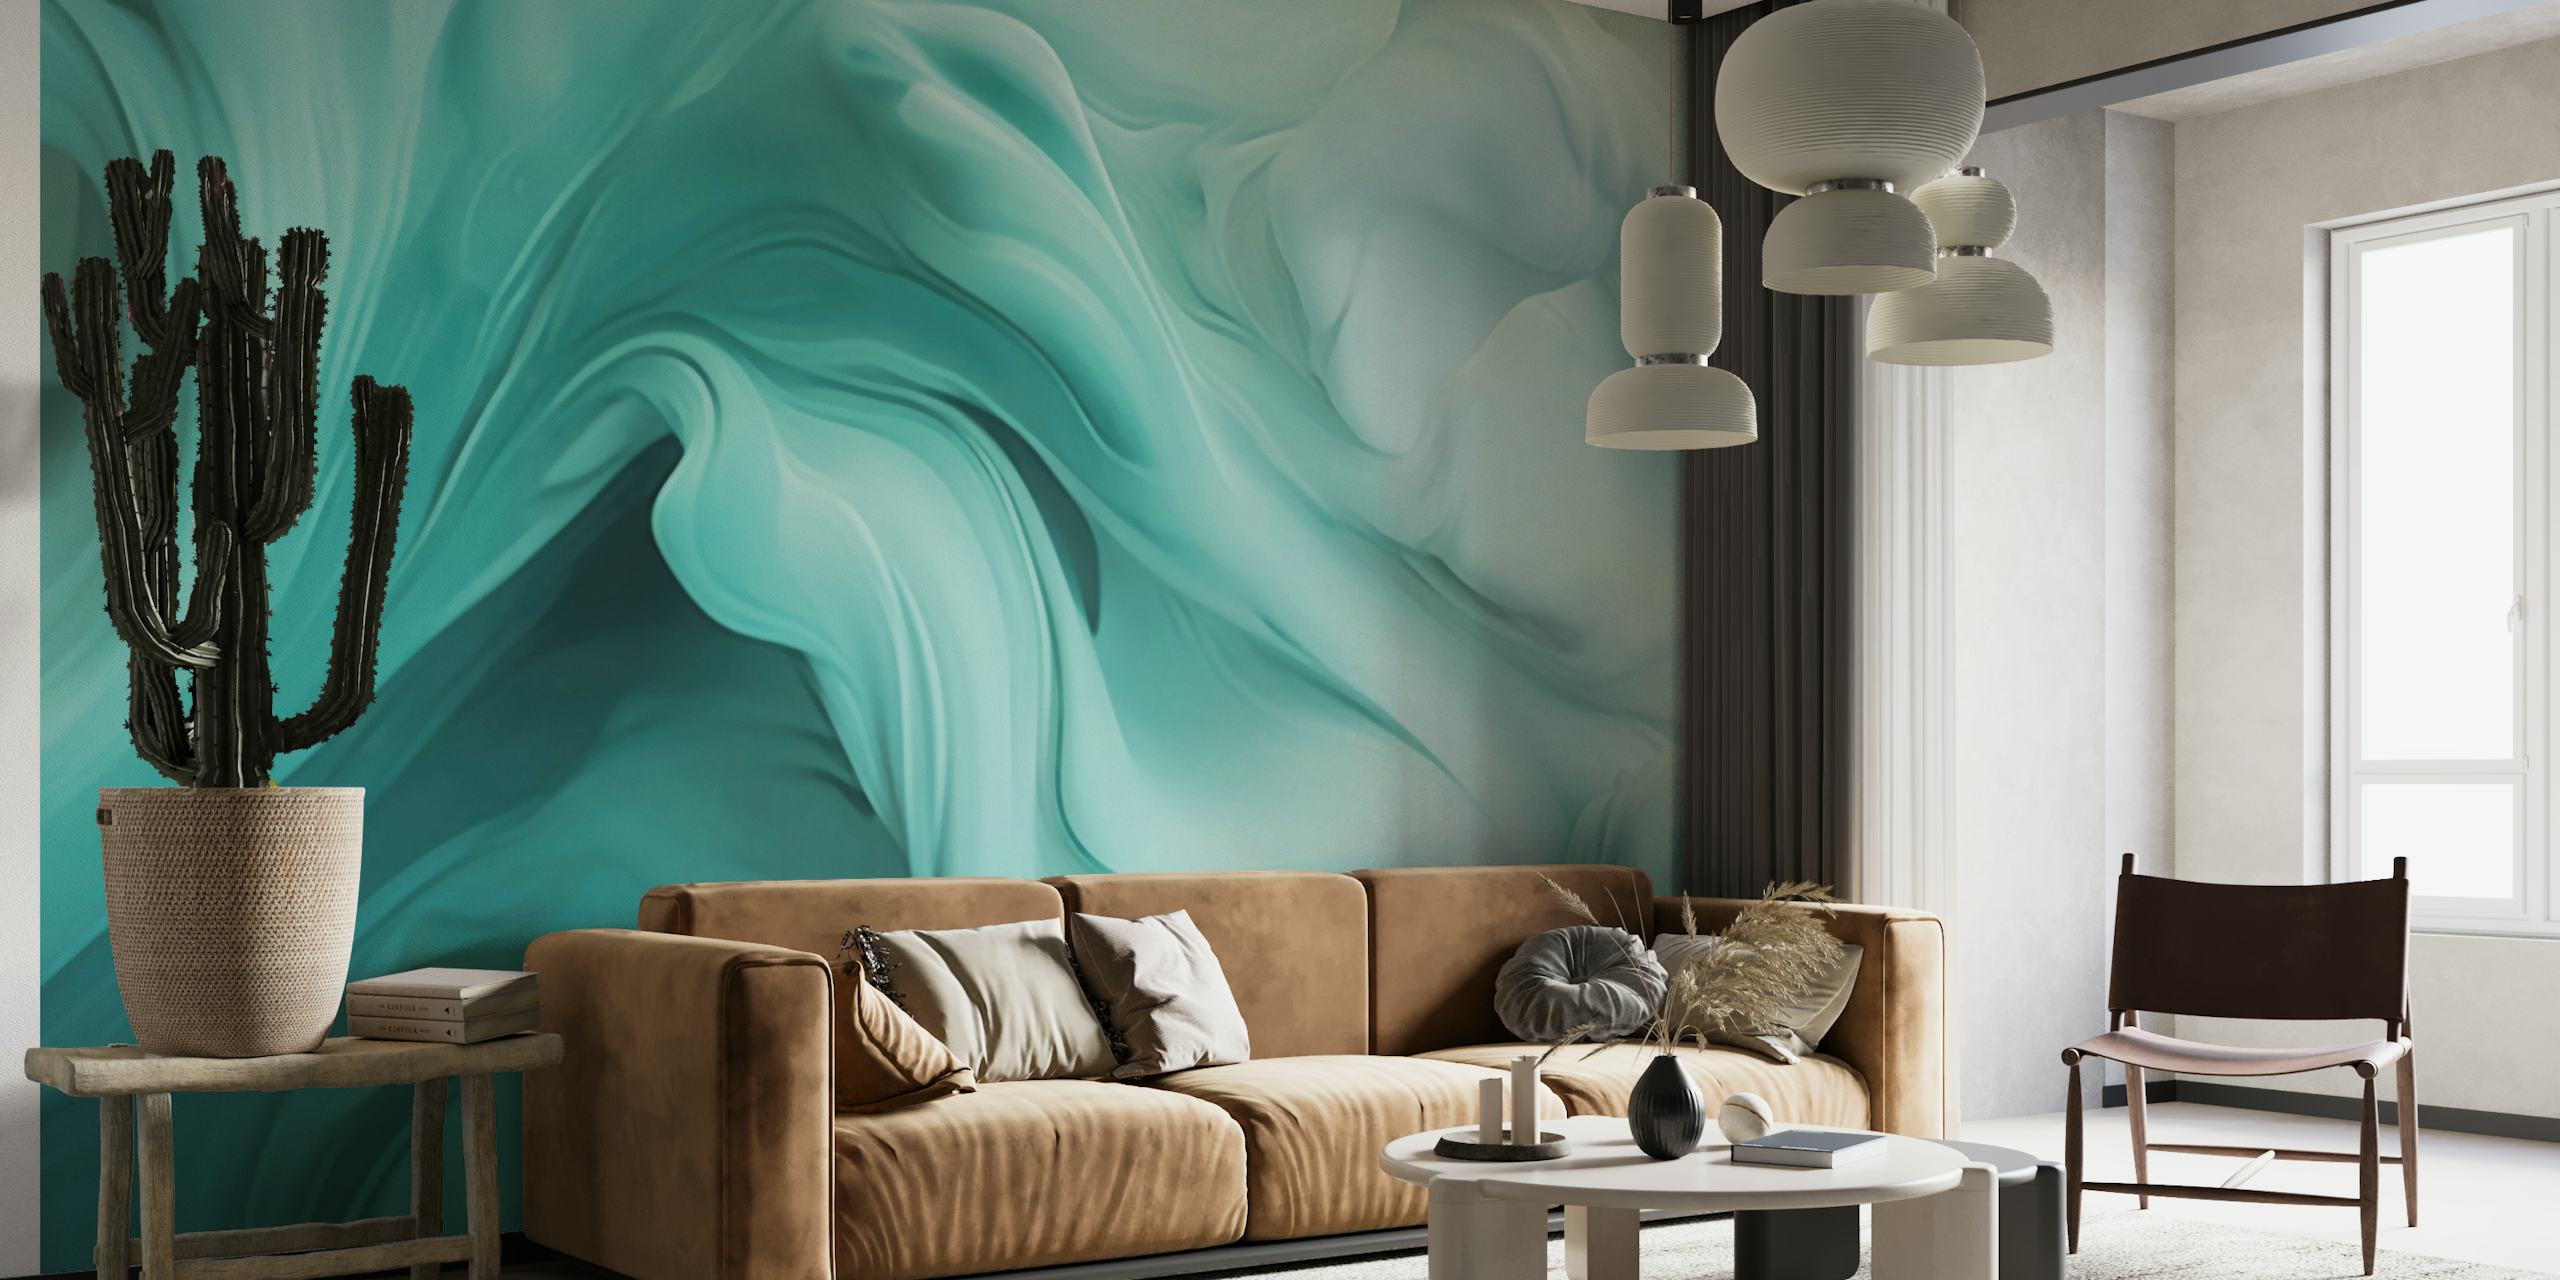 Fotomural vinílico de parede de arte fluida abstrata pastel menta e turquesa